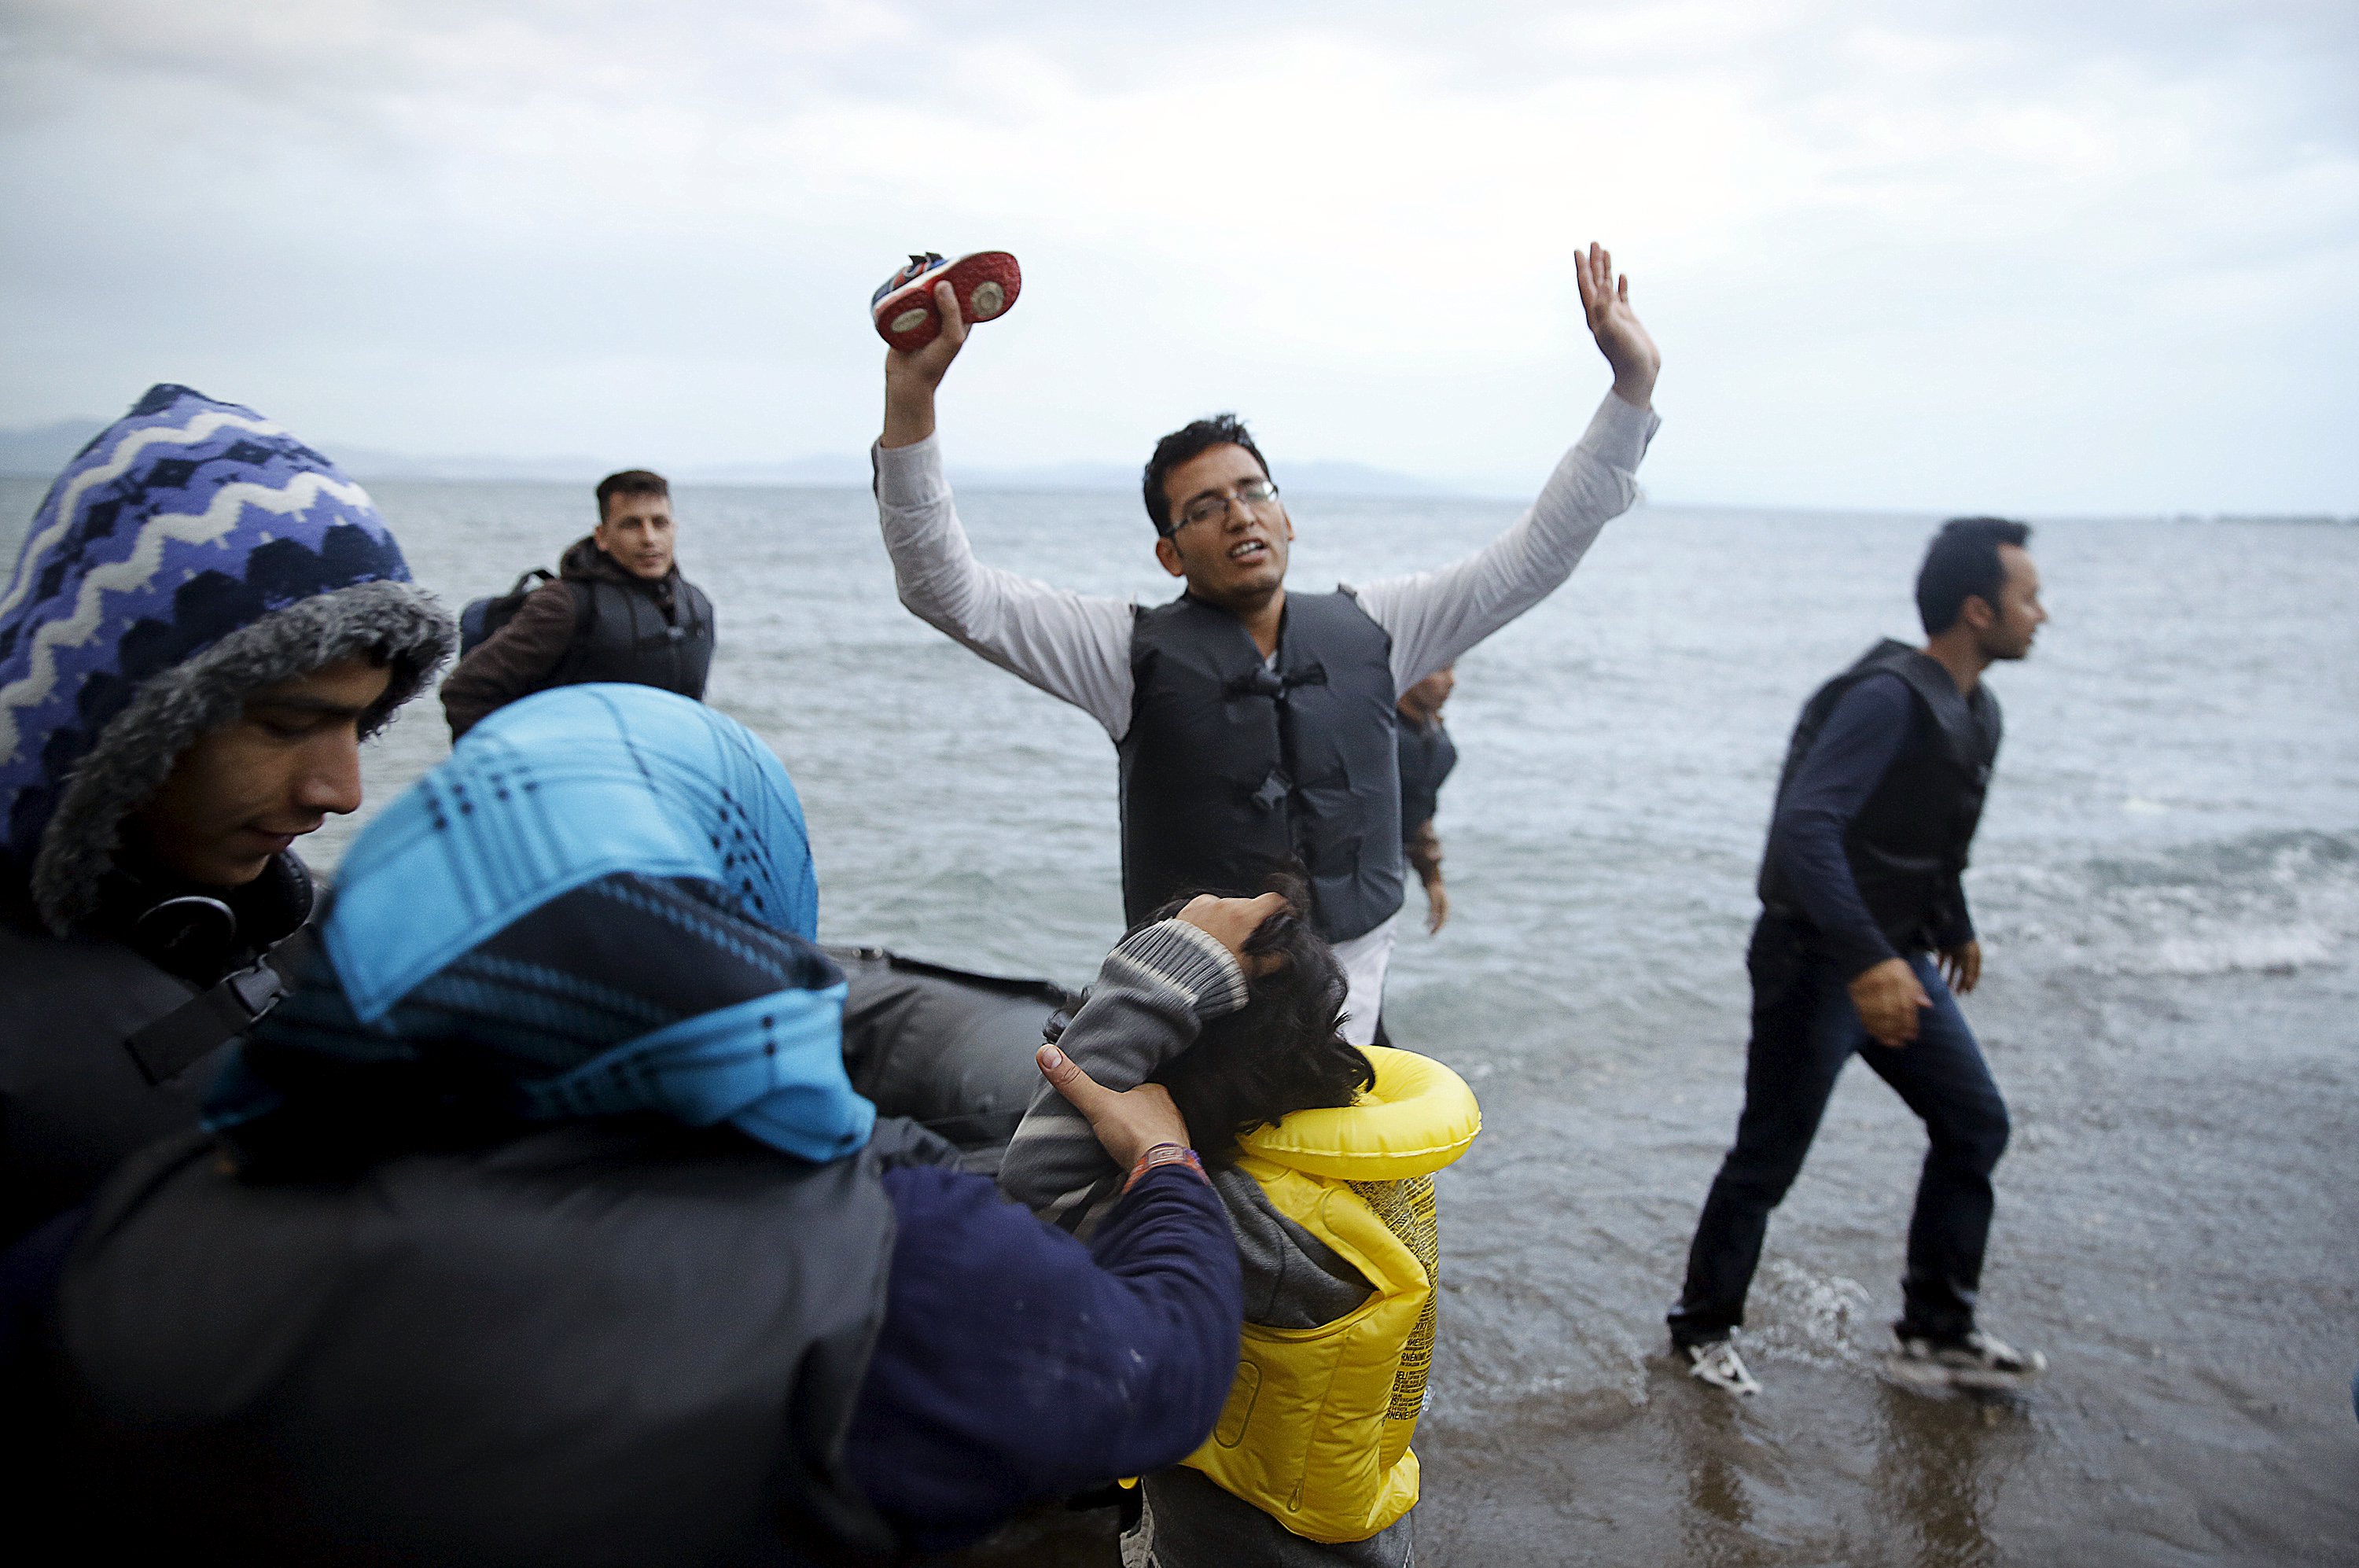 Τρεις χώρες – μέλη της ΕΕ μπλοκάρουν τη μετεγκατάσταση προσφύγων